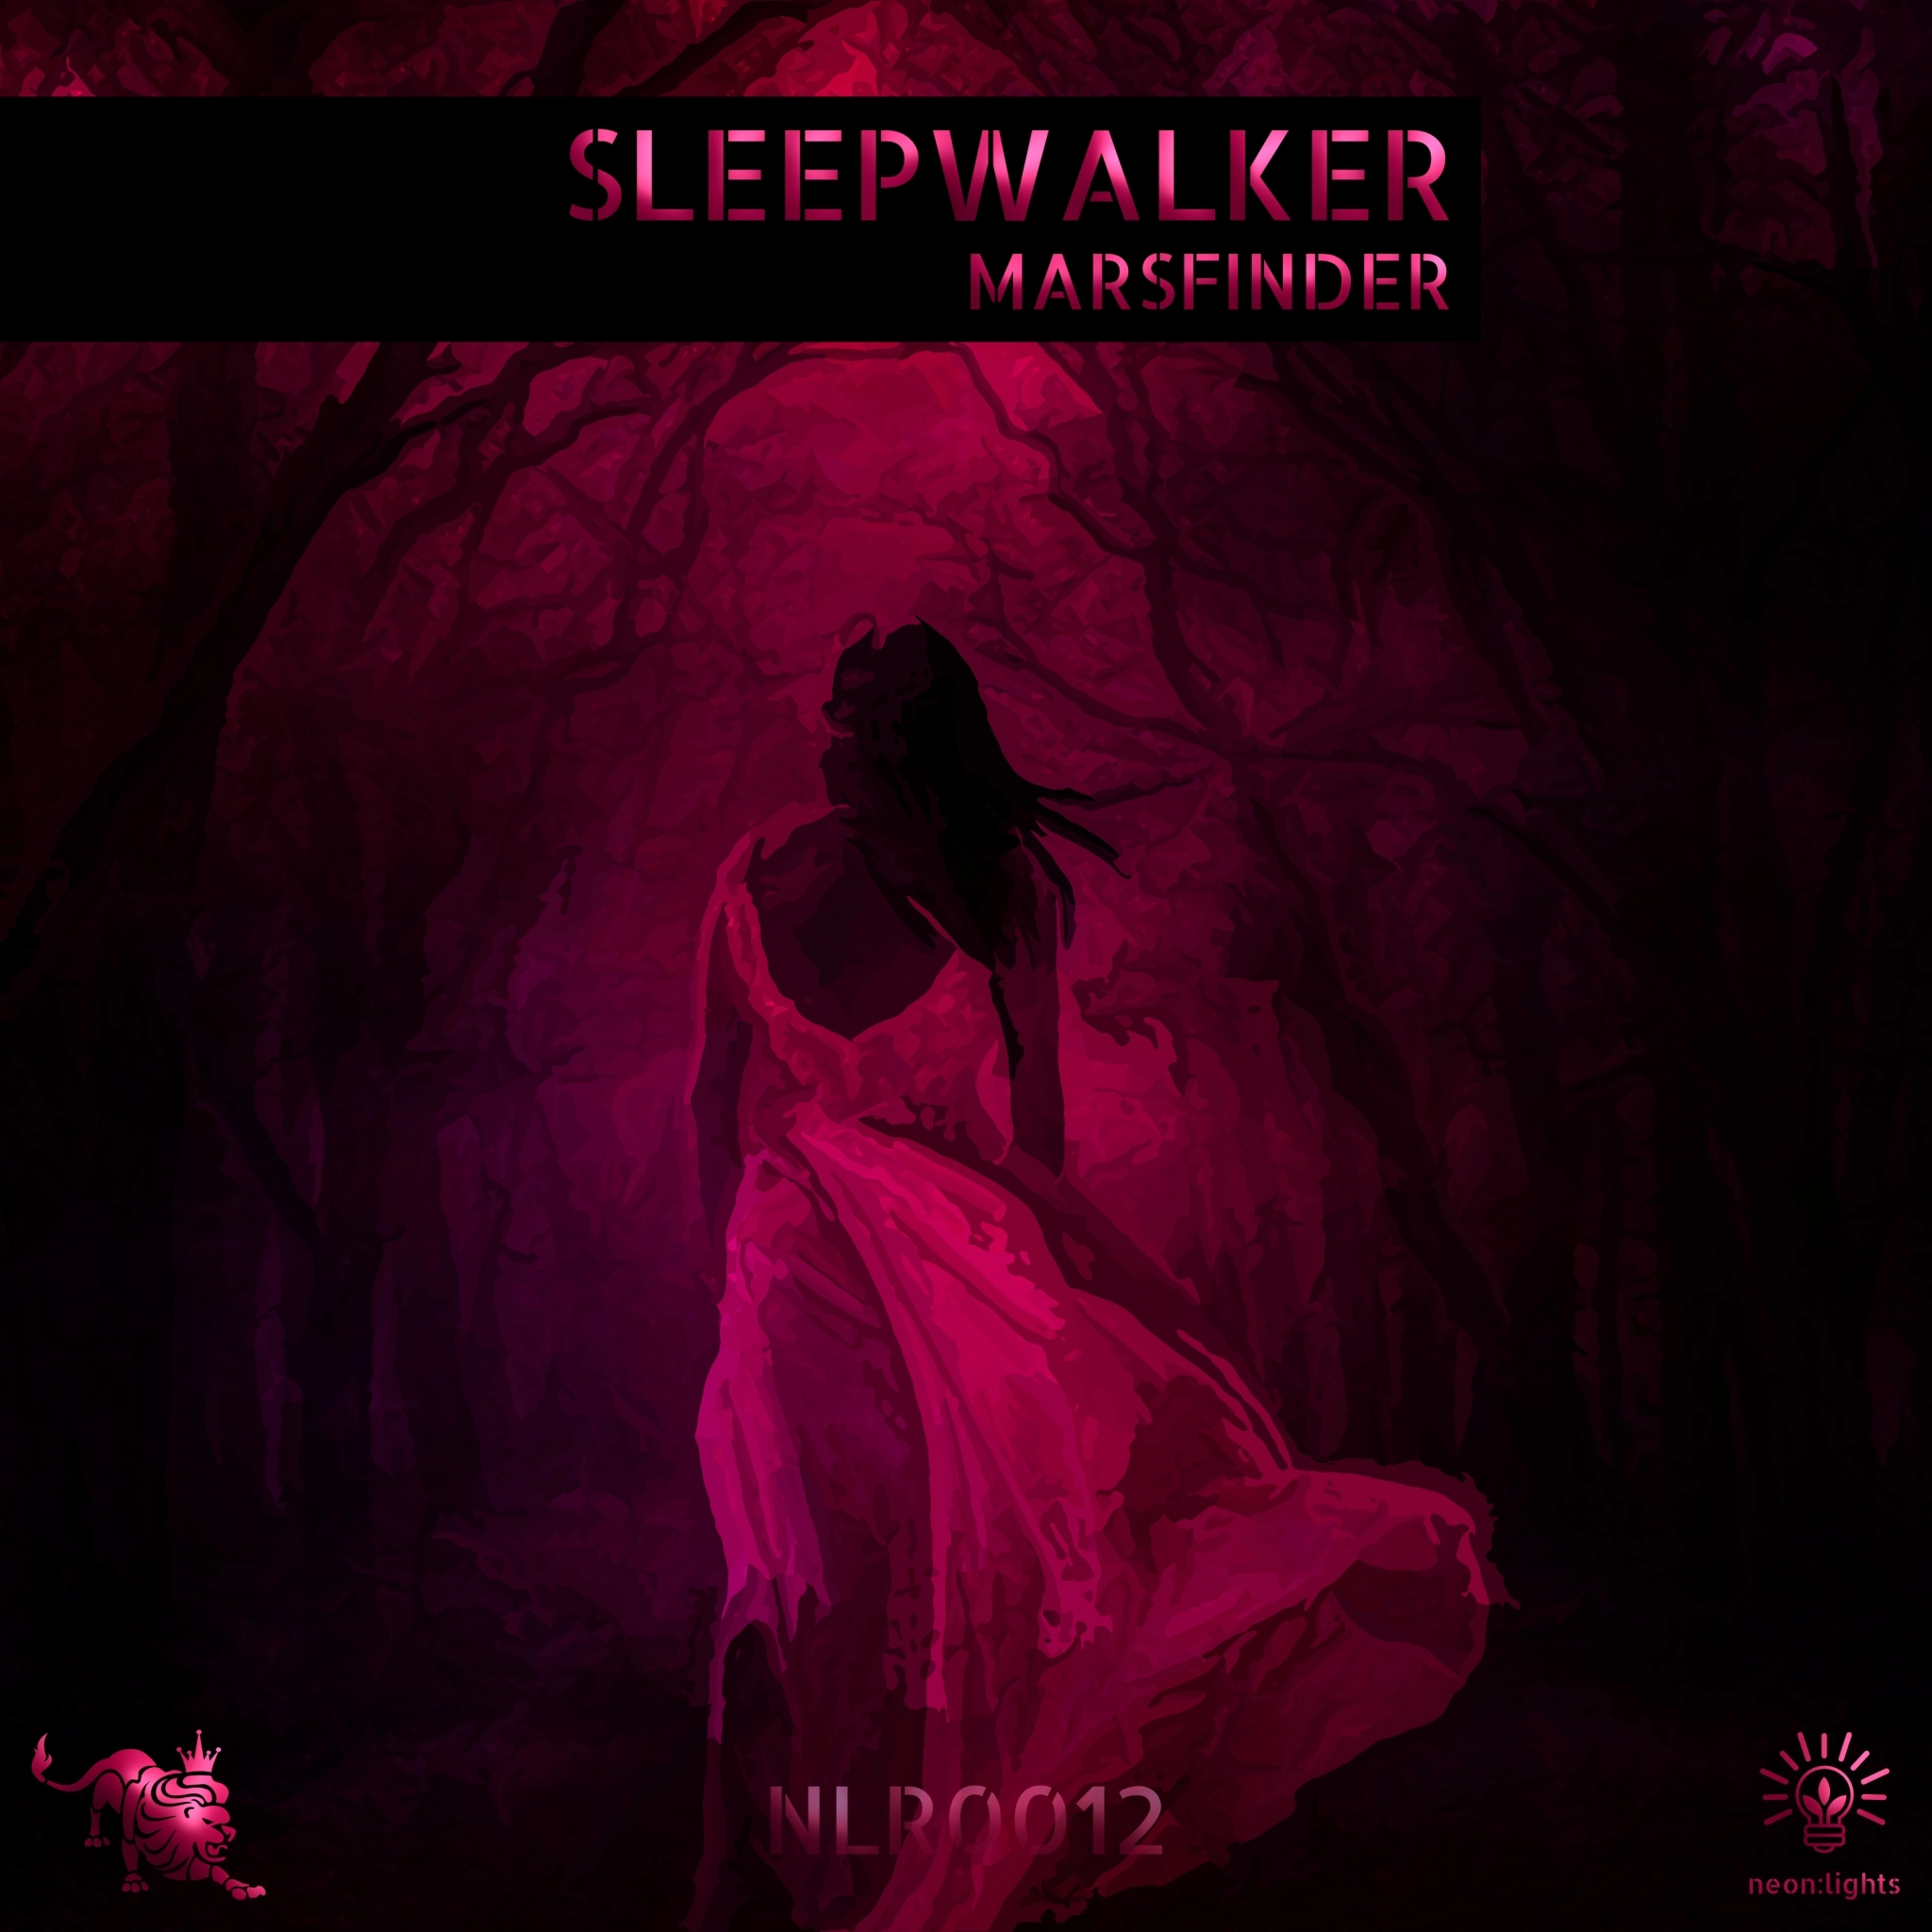 Advertising: Marsfinder - Sleepwalker